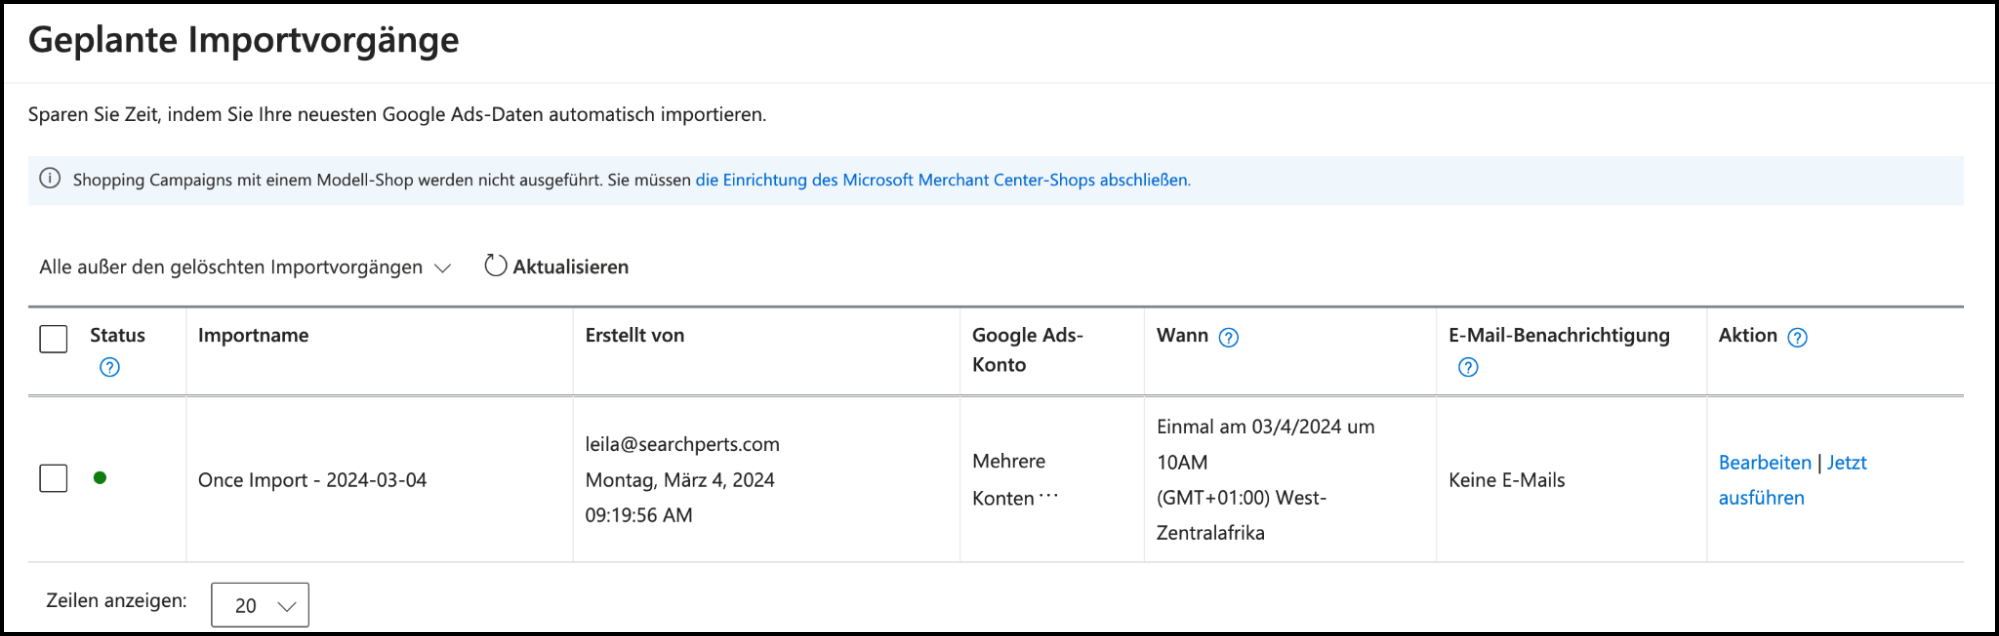 Detailansicht der geplanten Importvorgänge in Microsoft Advertising mit einem hervorgehobenen, aktivierten einmaligen Import.